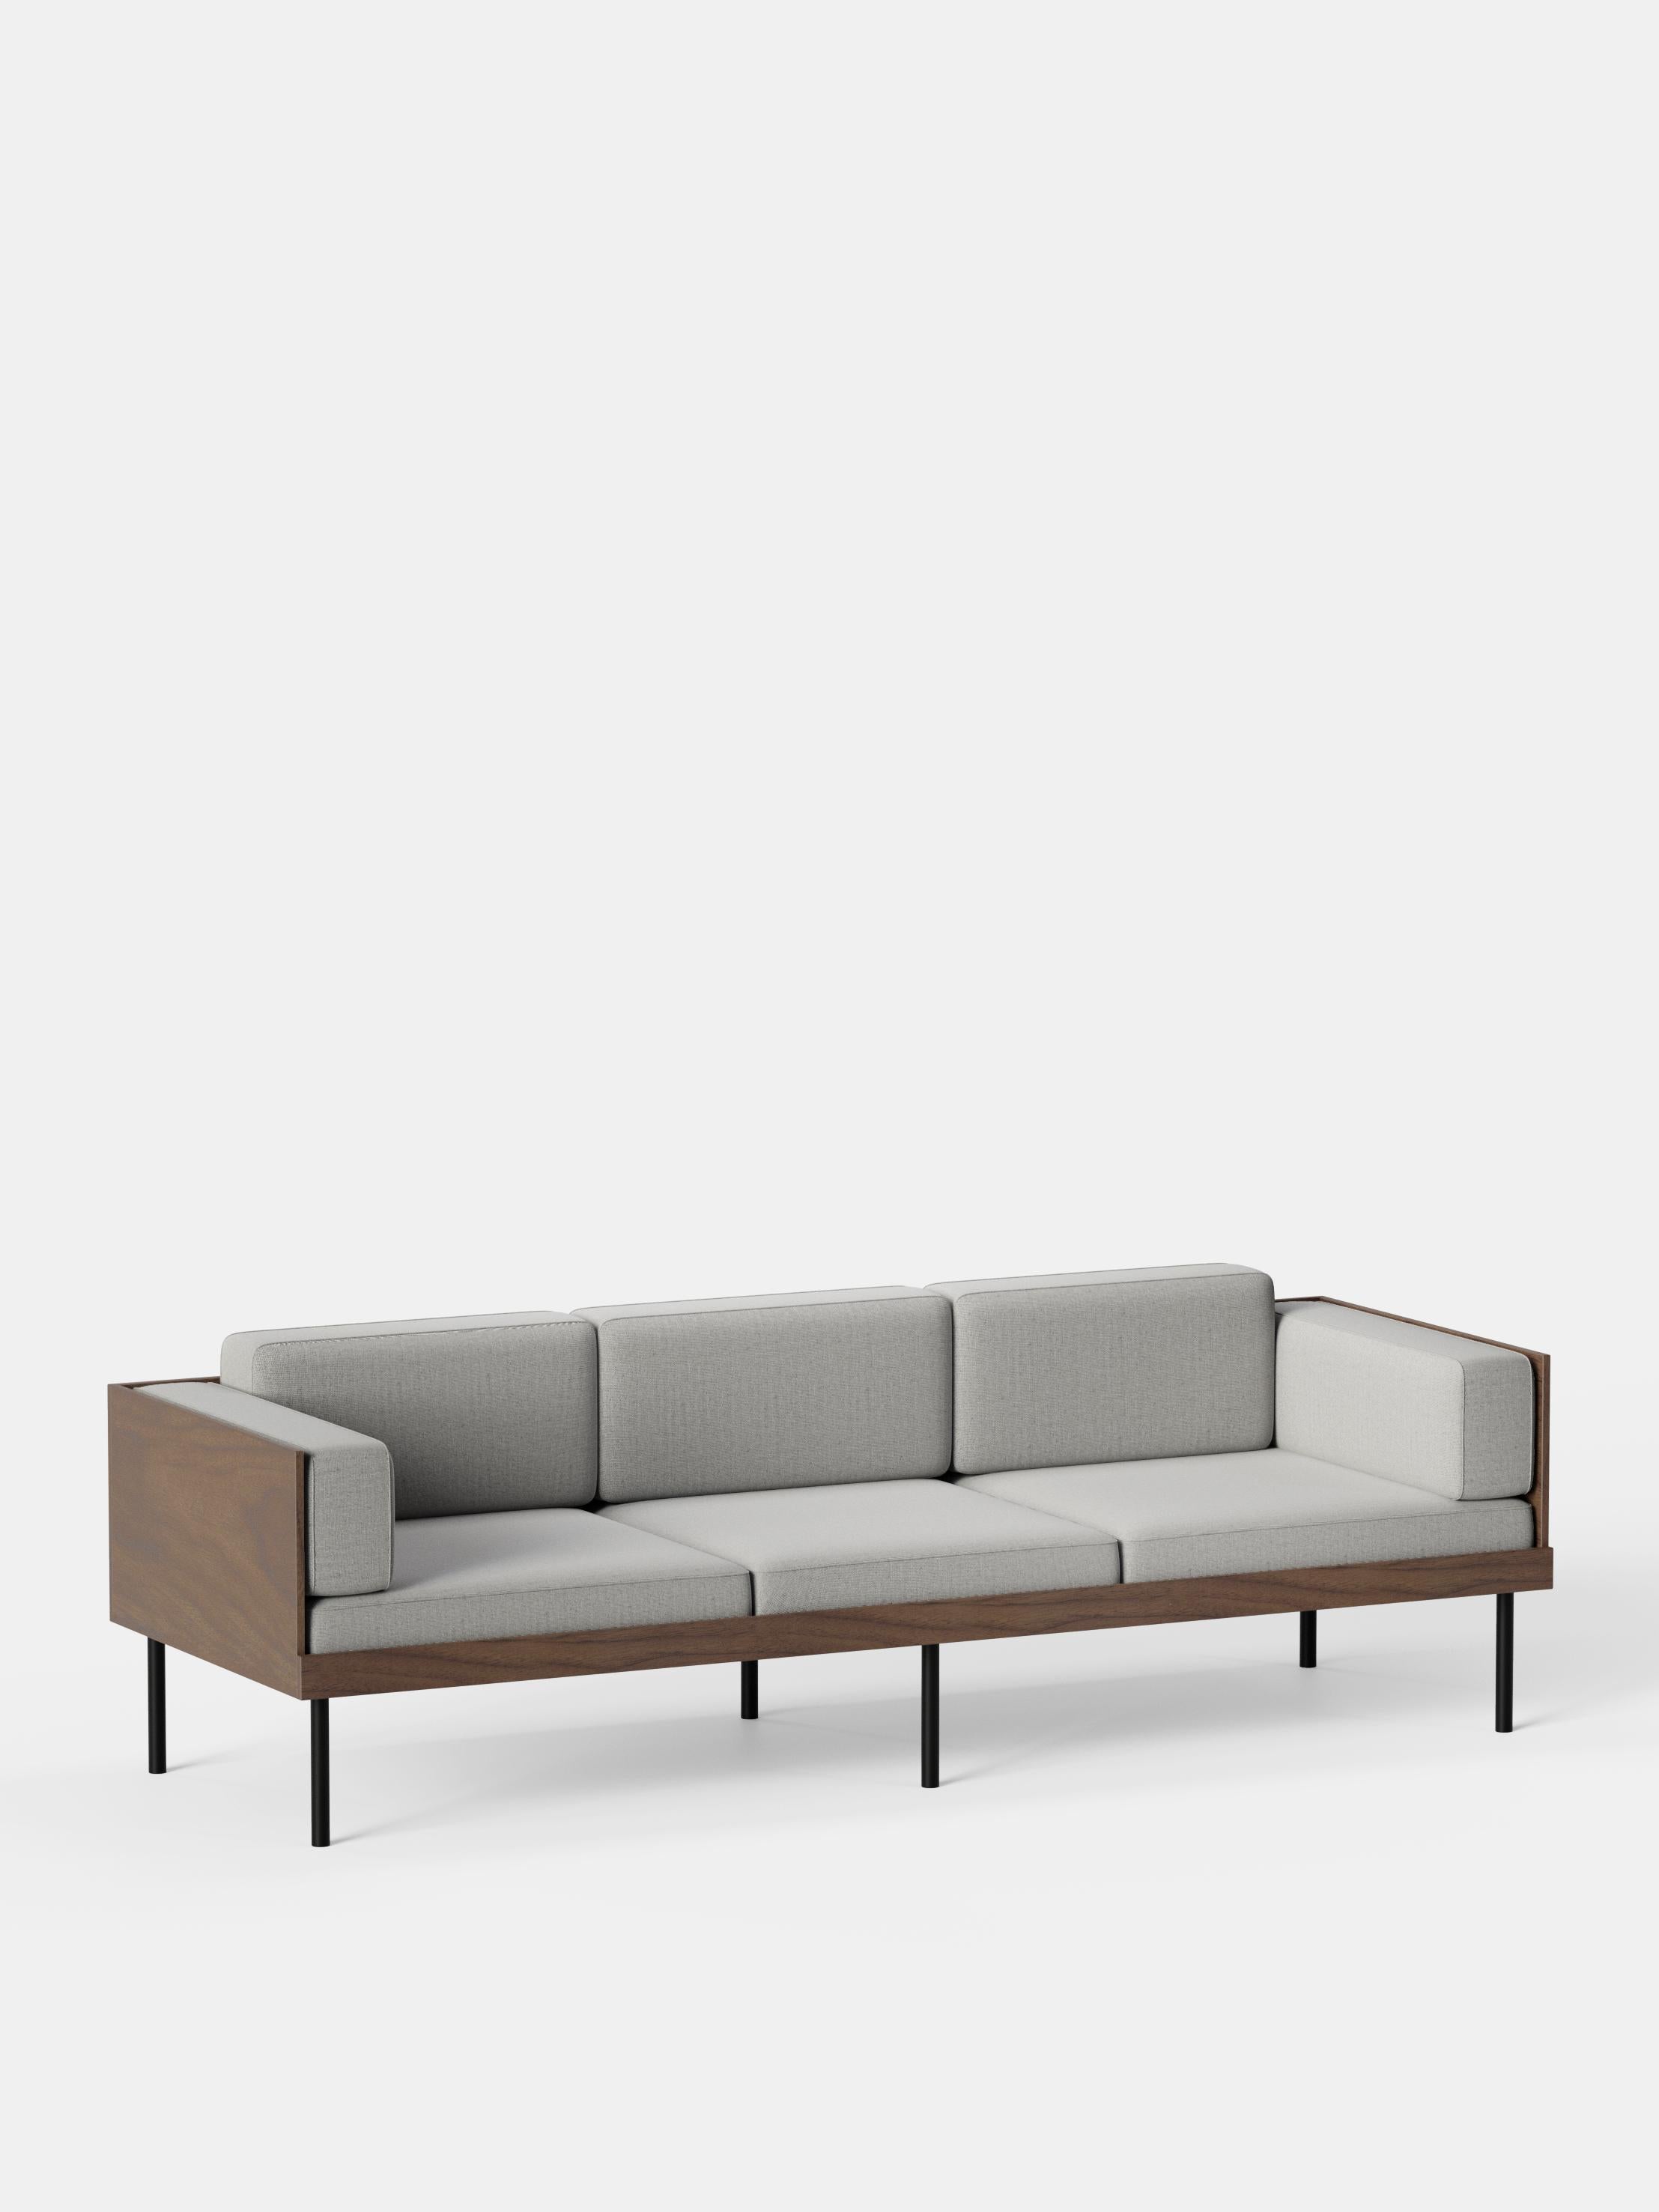 Sofa mit grauem Schliff von Kann Design
Abmessungen: T 80 x B 230 x H 72 cm.
MATERIALIEN: Massivholz, Stahl, Holzfurnier, HR-Schaum, Stoffpolsterung Kvadrat Remix 126 (90% Wolle, 10% Nylon).
Erhältlich in anderen Stoffen.

Das Sofa Cut hat eine